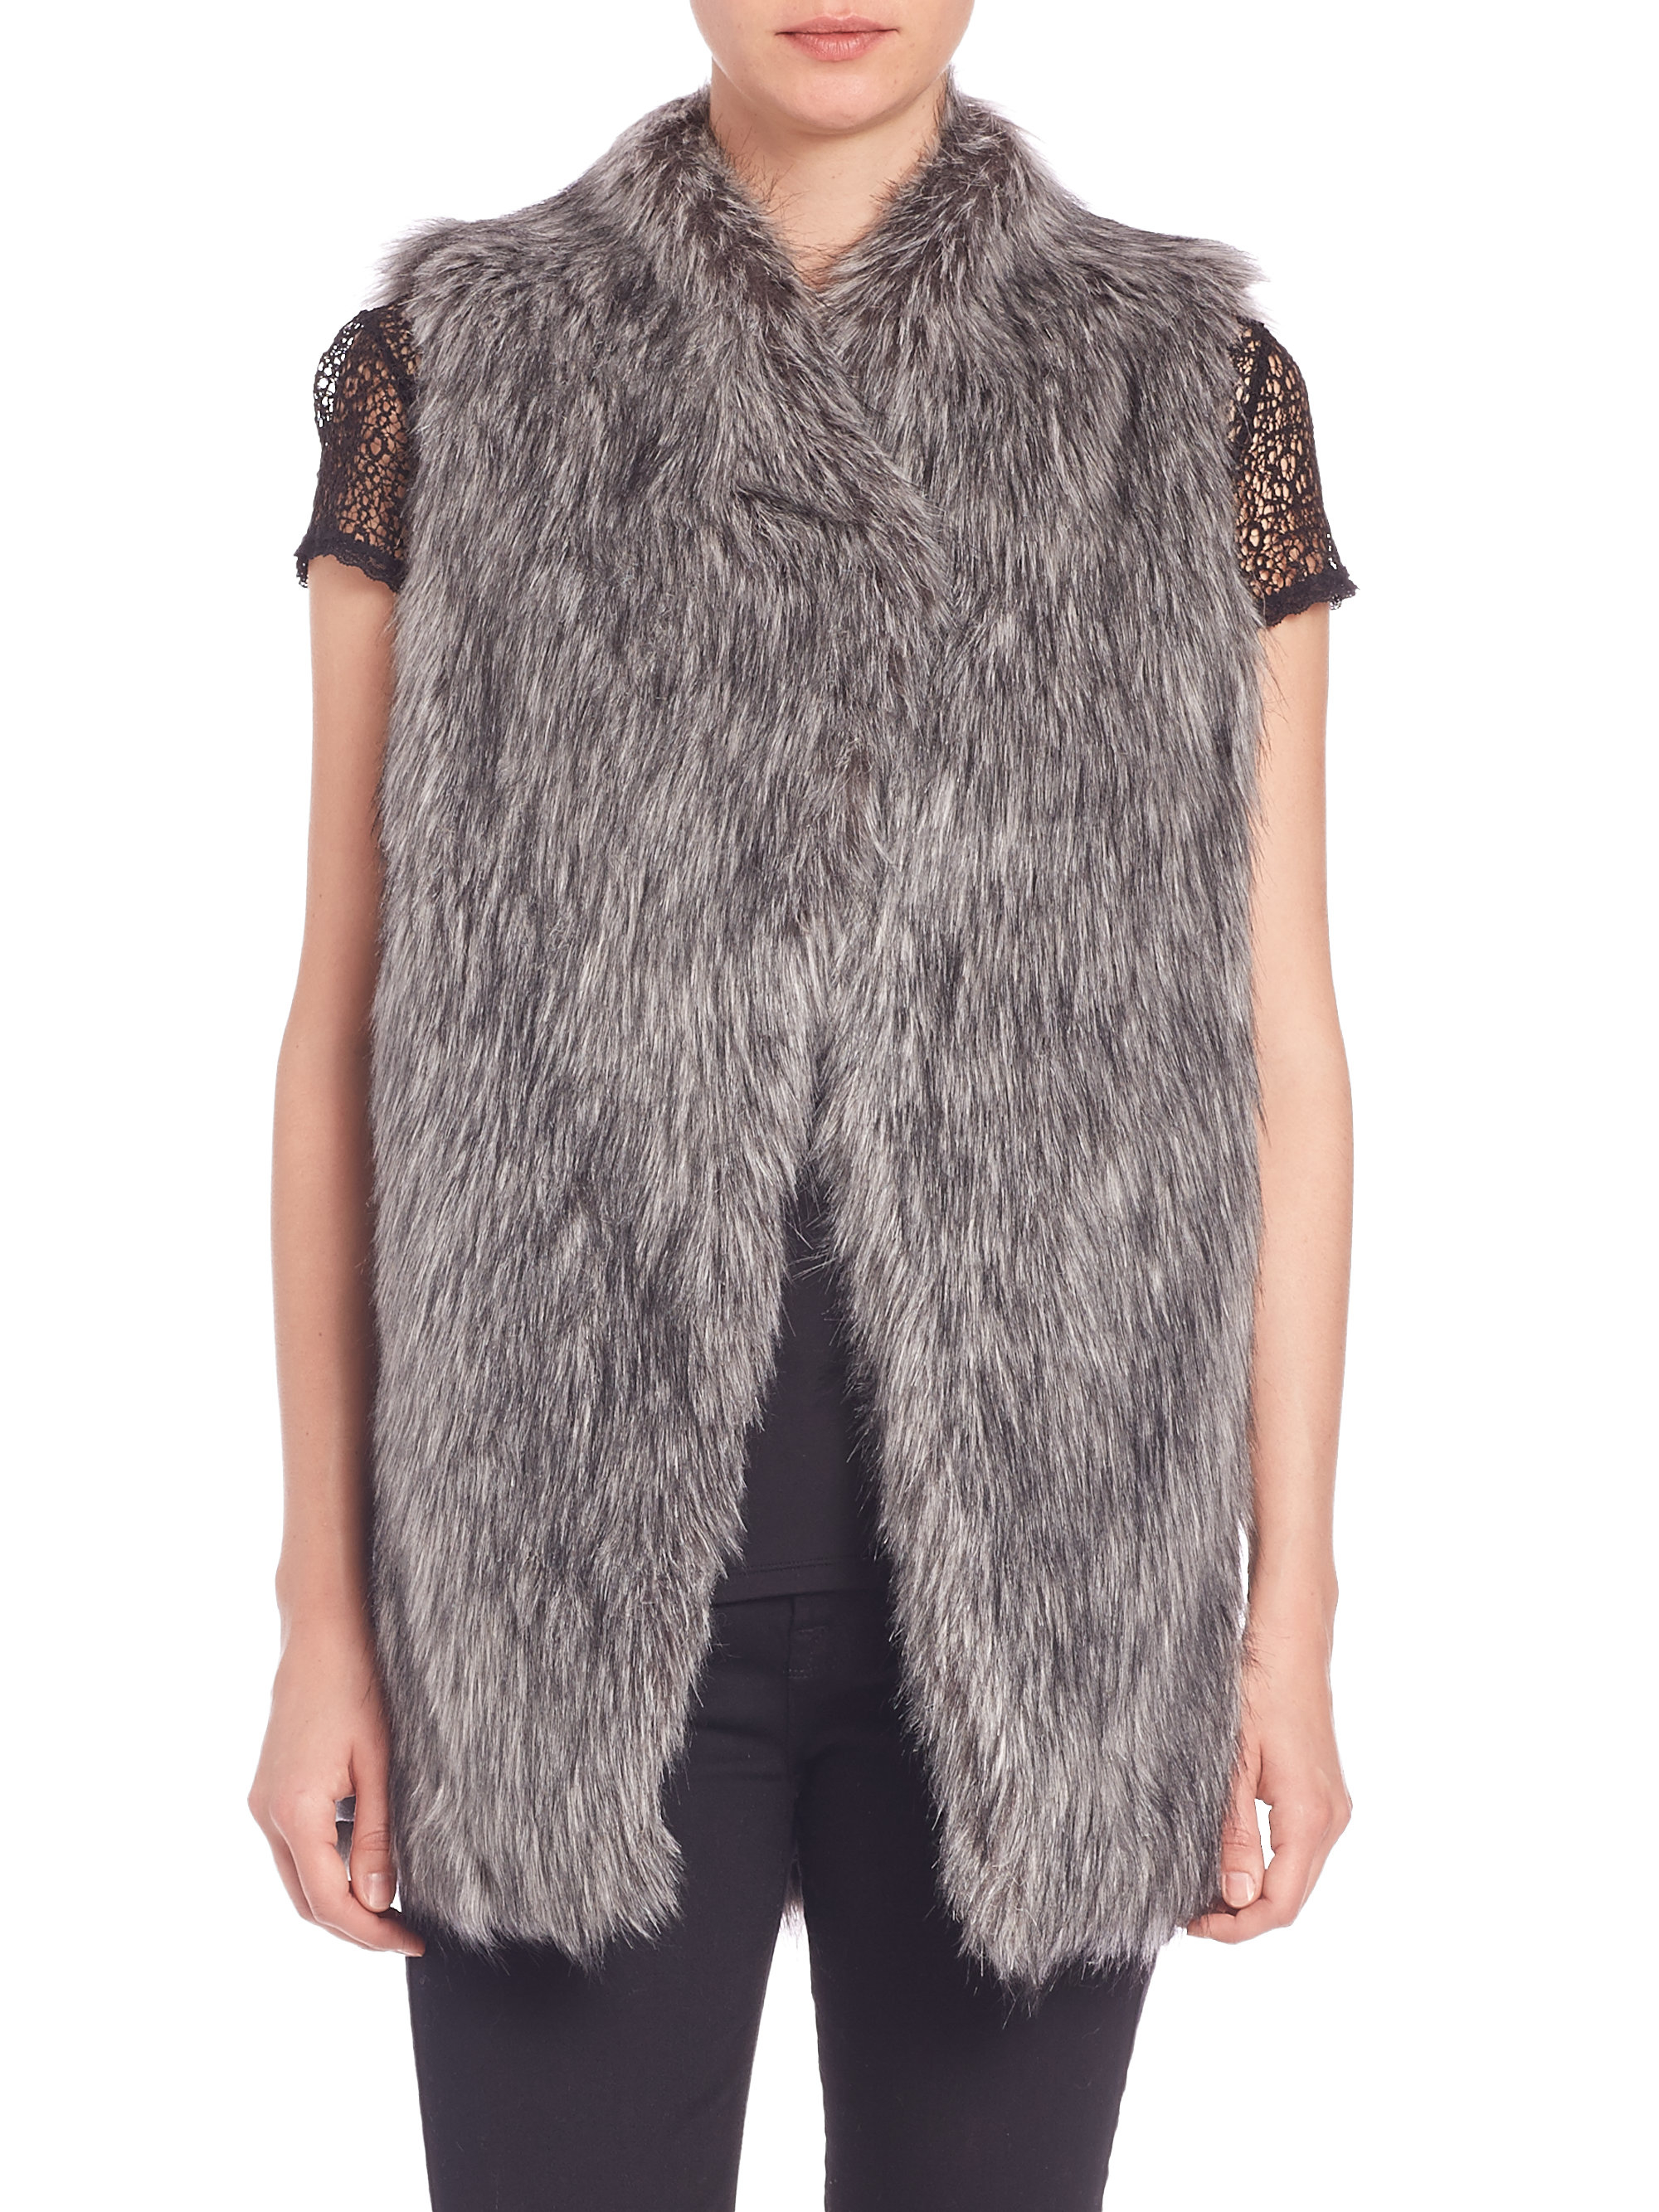 Lyst - Dkny Faux Fur Vest in Gray